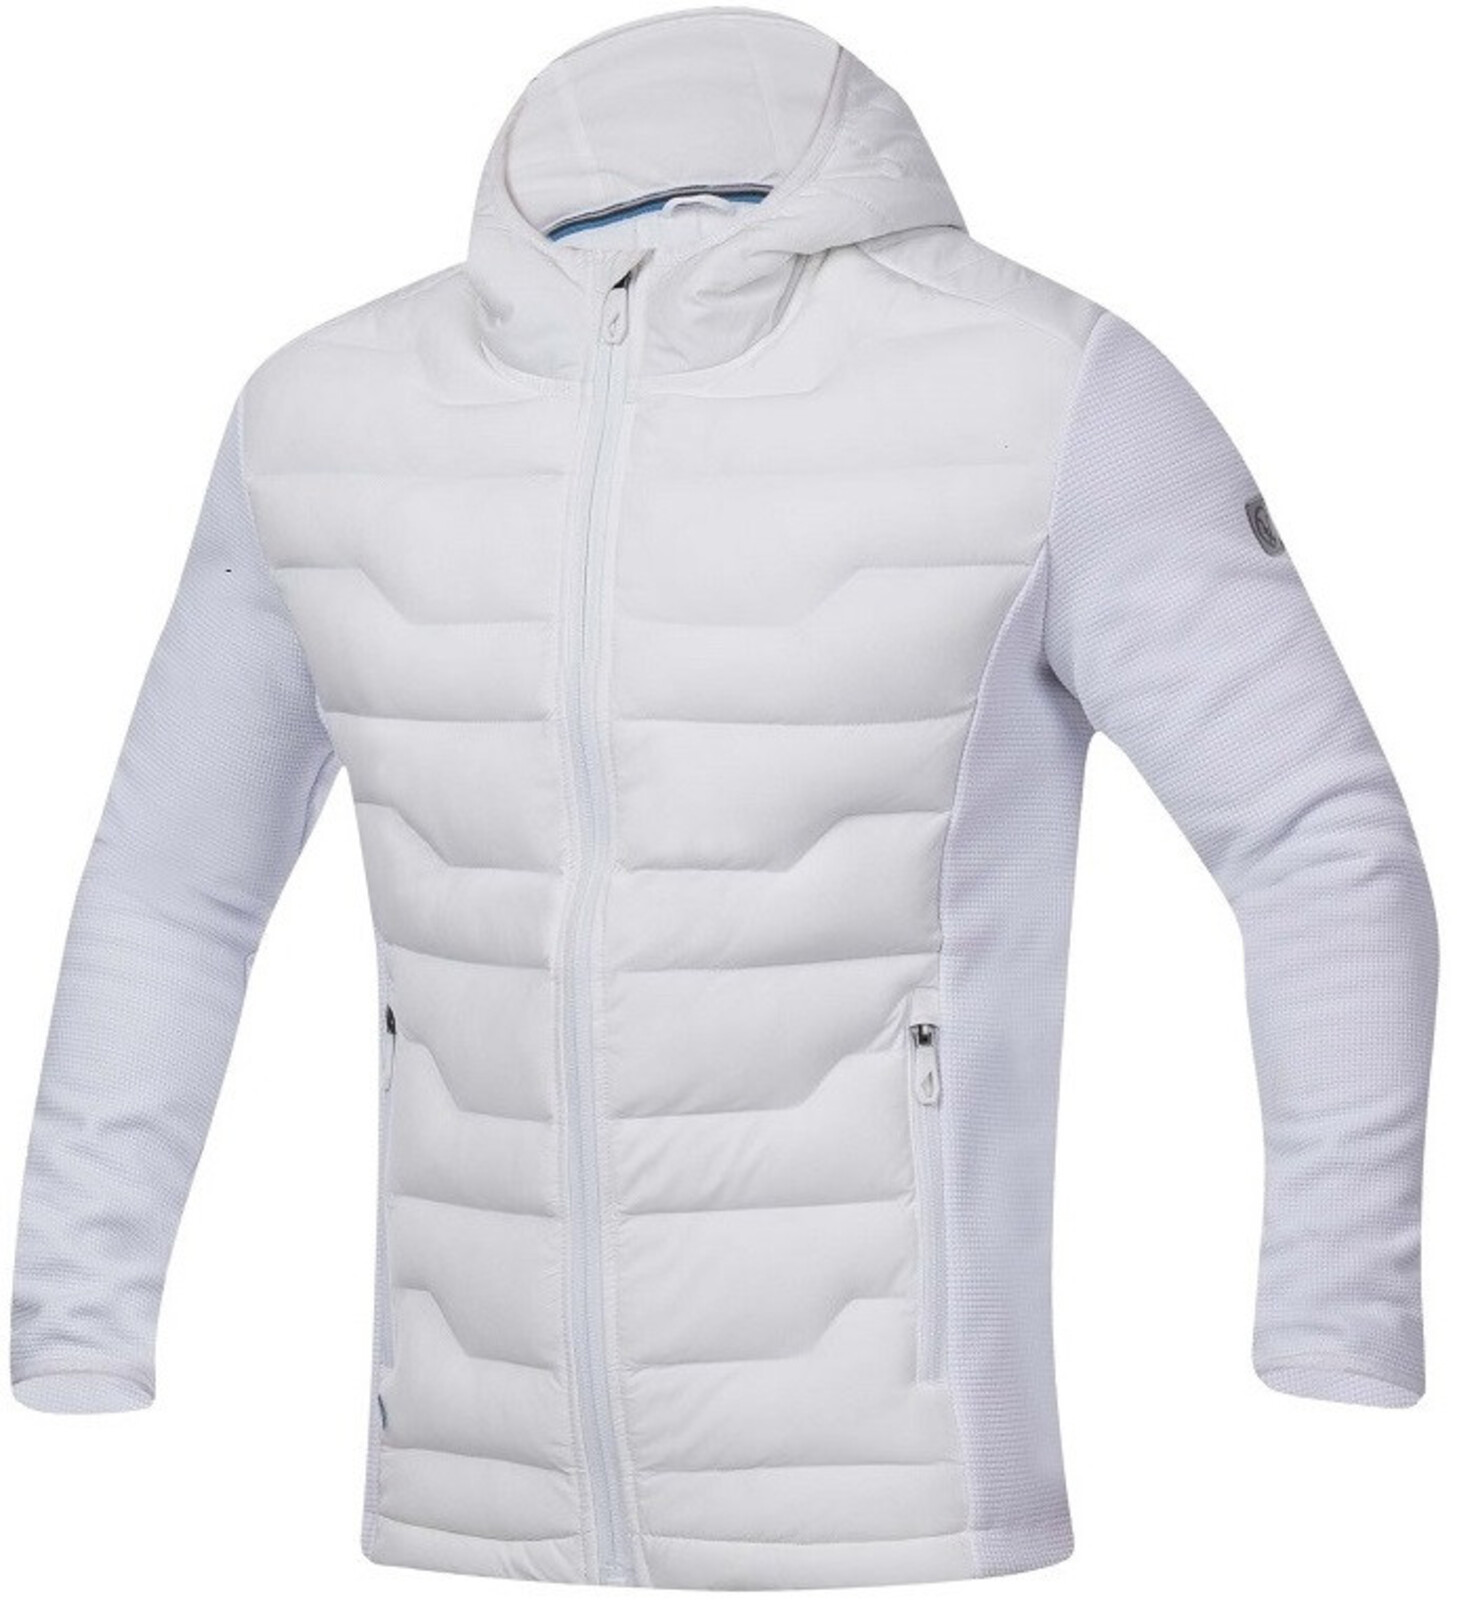 Pánska úpletová bunda Ardon Nypaxx - veľkosť: L, farba: biela